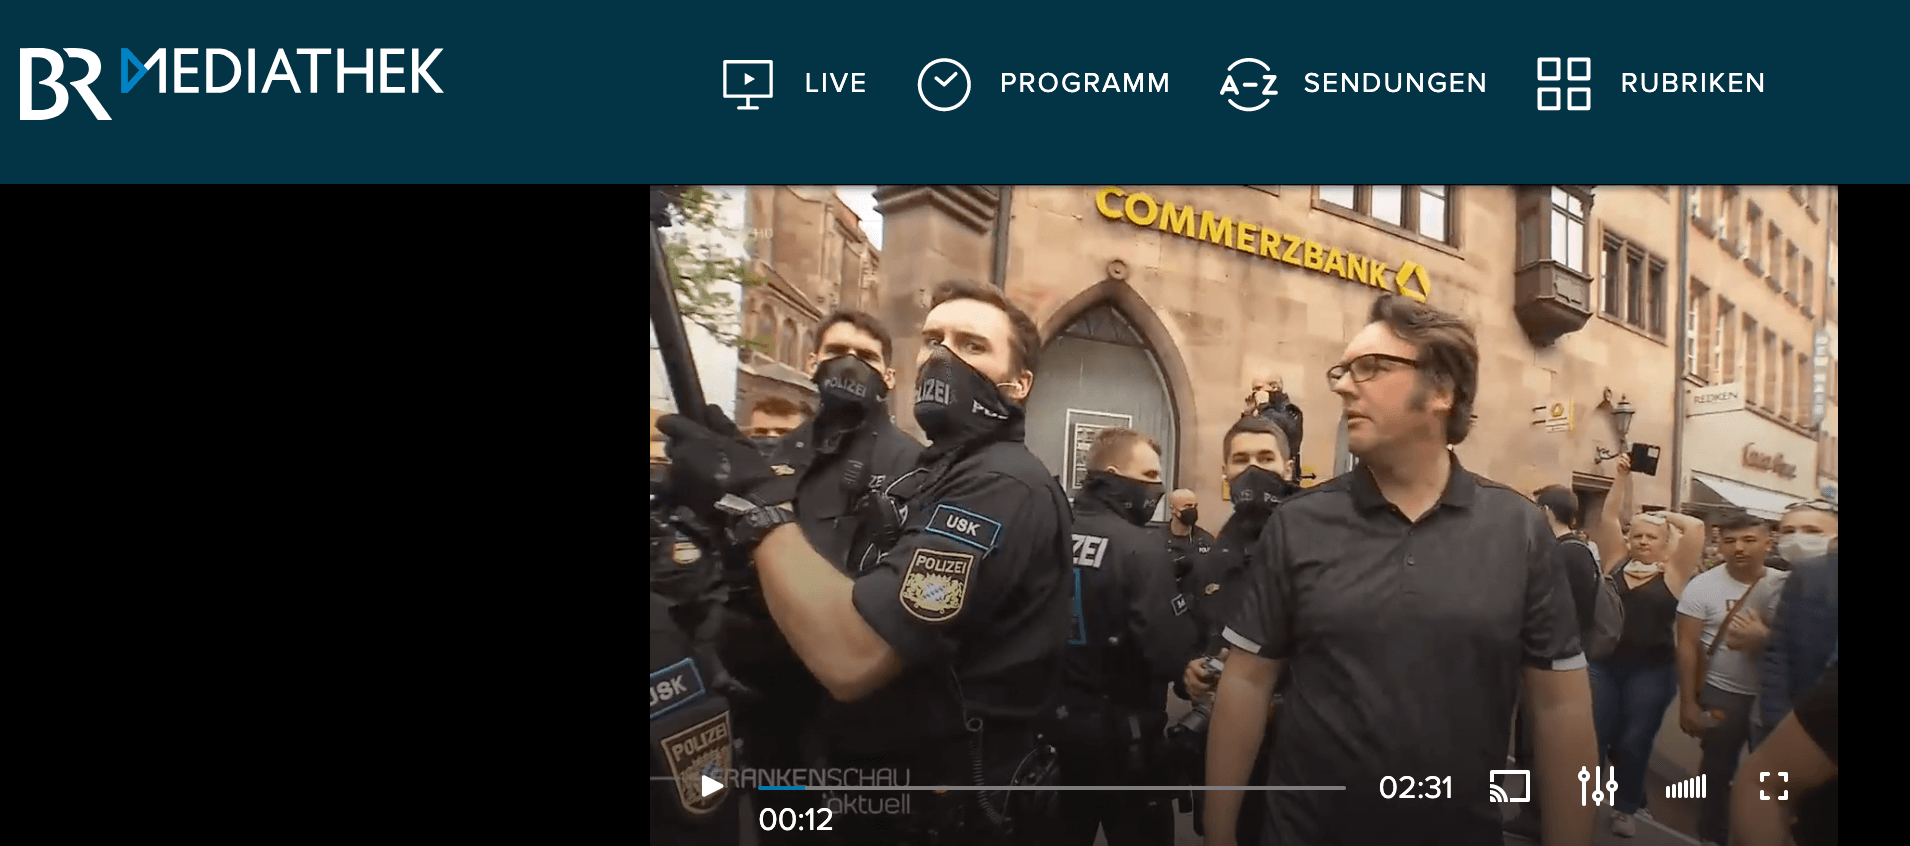  Die Originalaufnahme der Frankenschau zeigt nicht nur Polizeibeamte, sondern auch Demonstranten ohne Mund-Nasen-Bedeckung. (Quelle: BR, Screenshot: CORRECTIV)